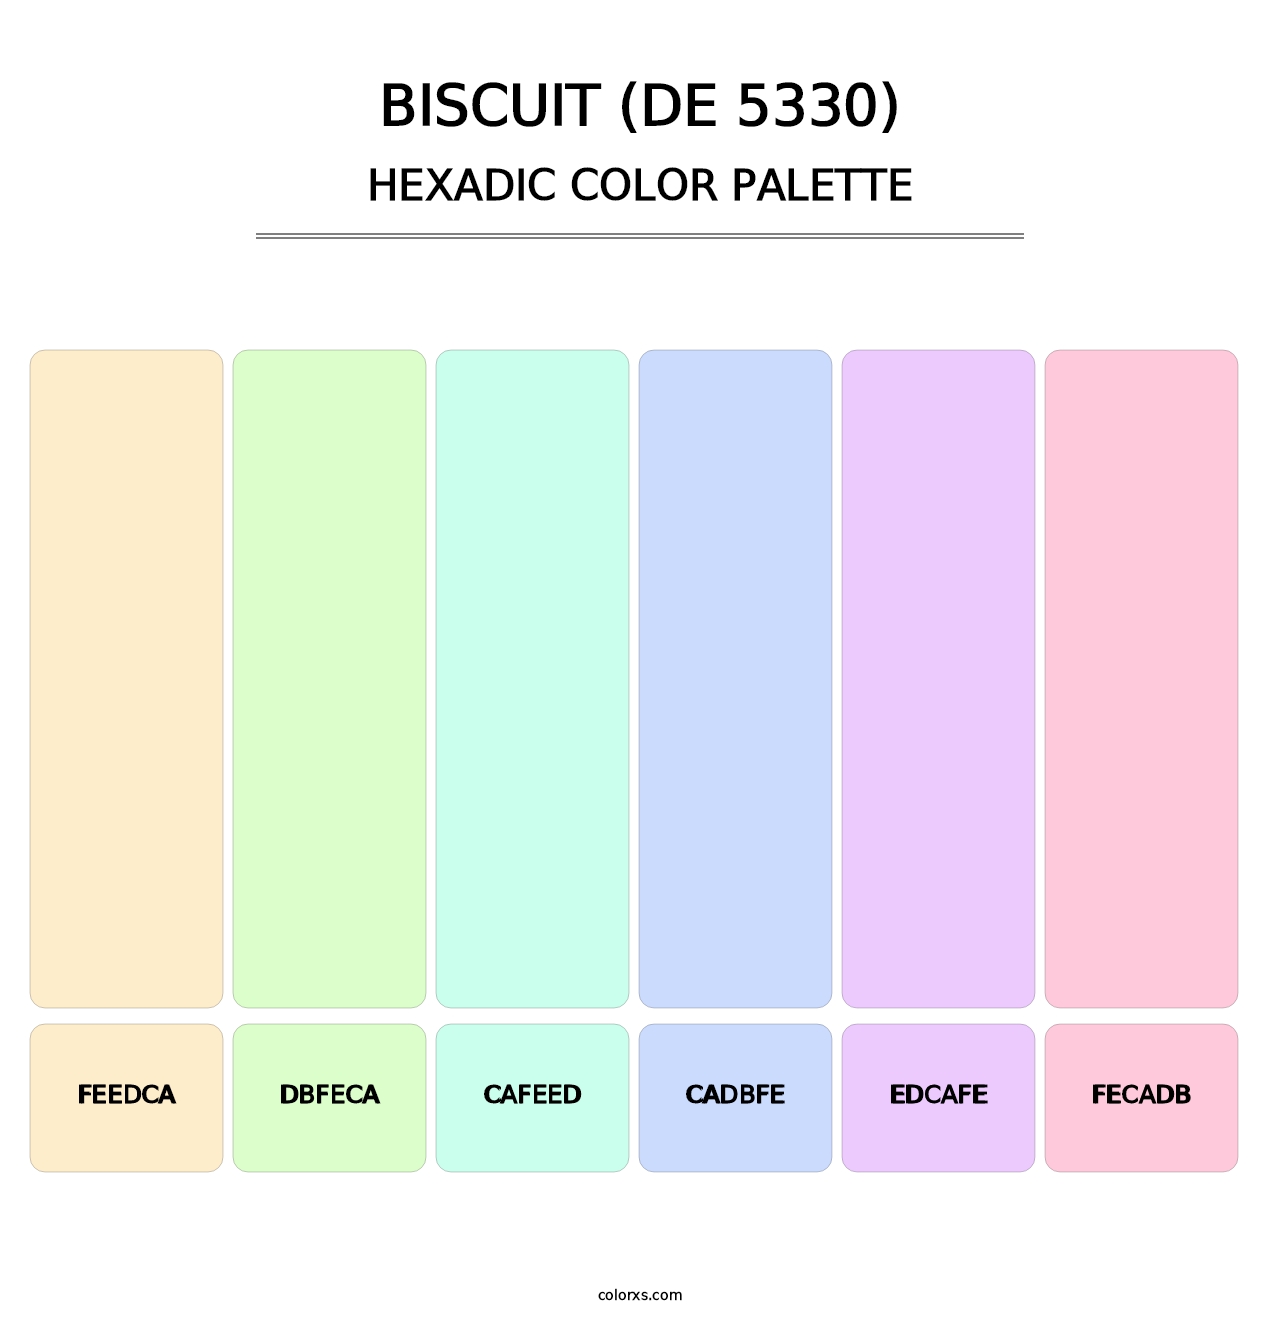 Biscuit (DE 5330) - Hexadic Color Palette